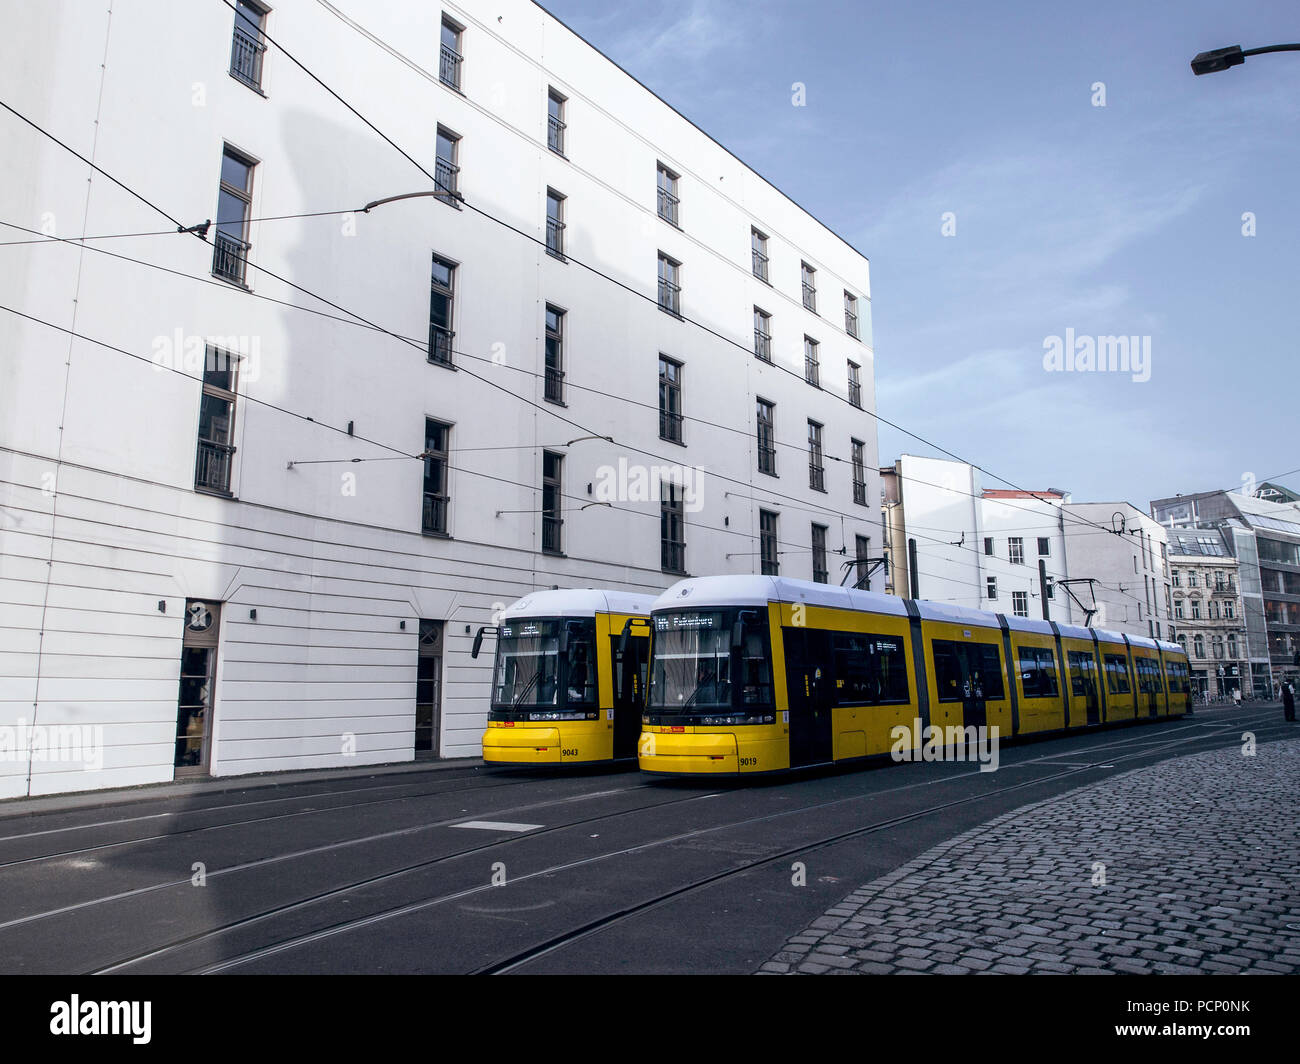 Trams at the Hackescher Markt in Berlin Stock Photo